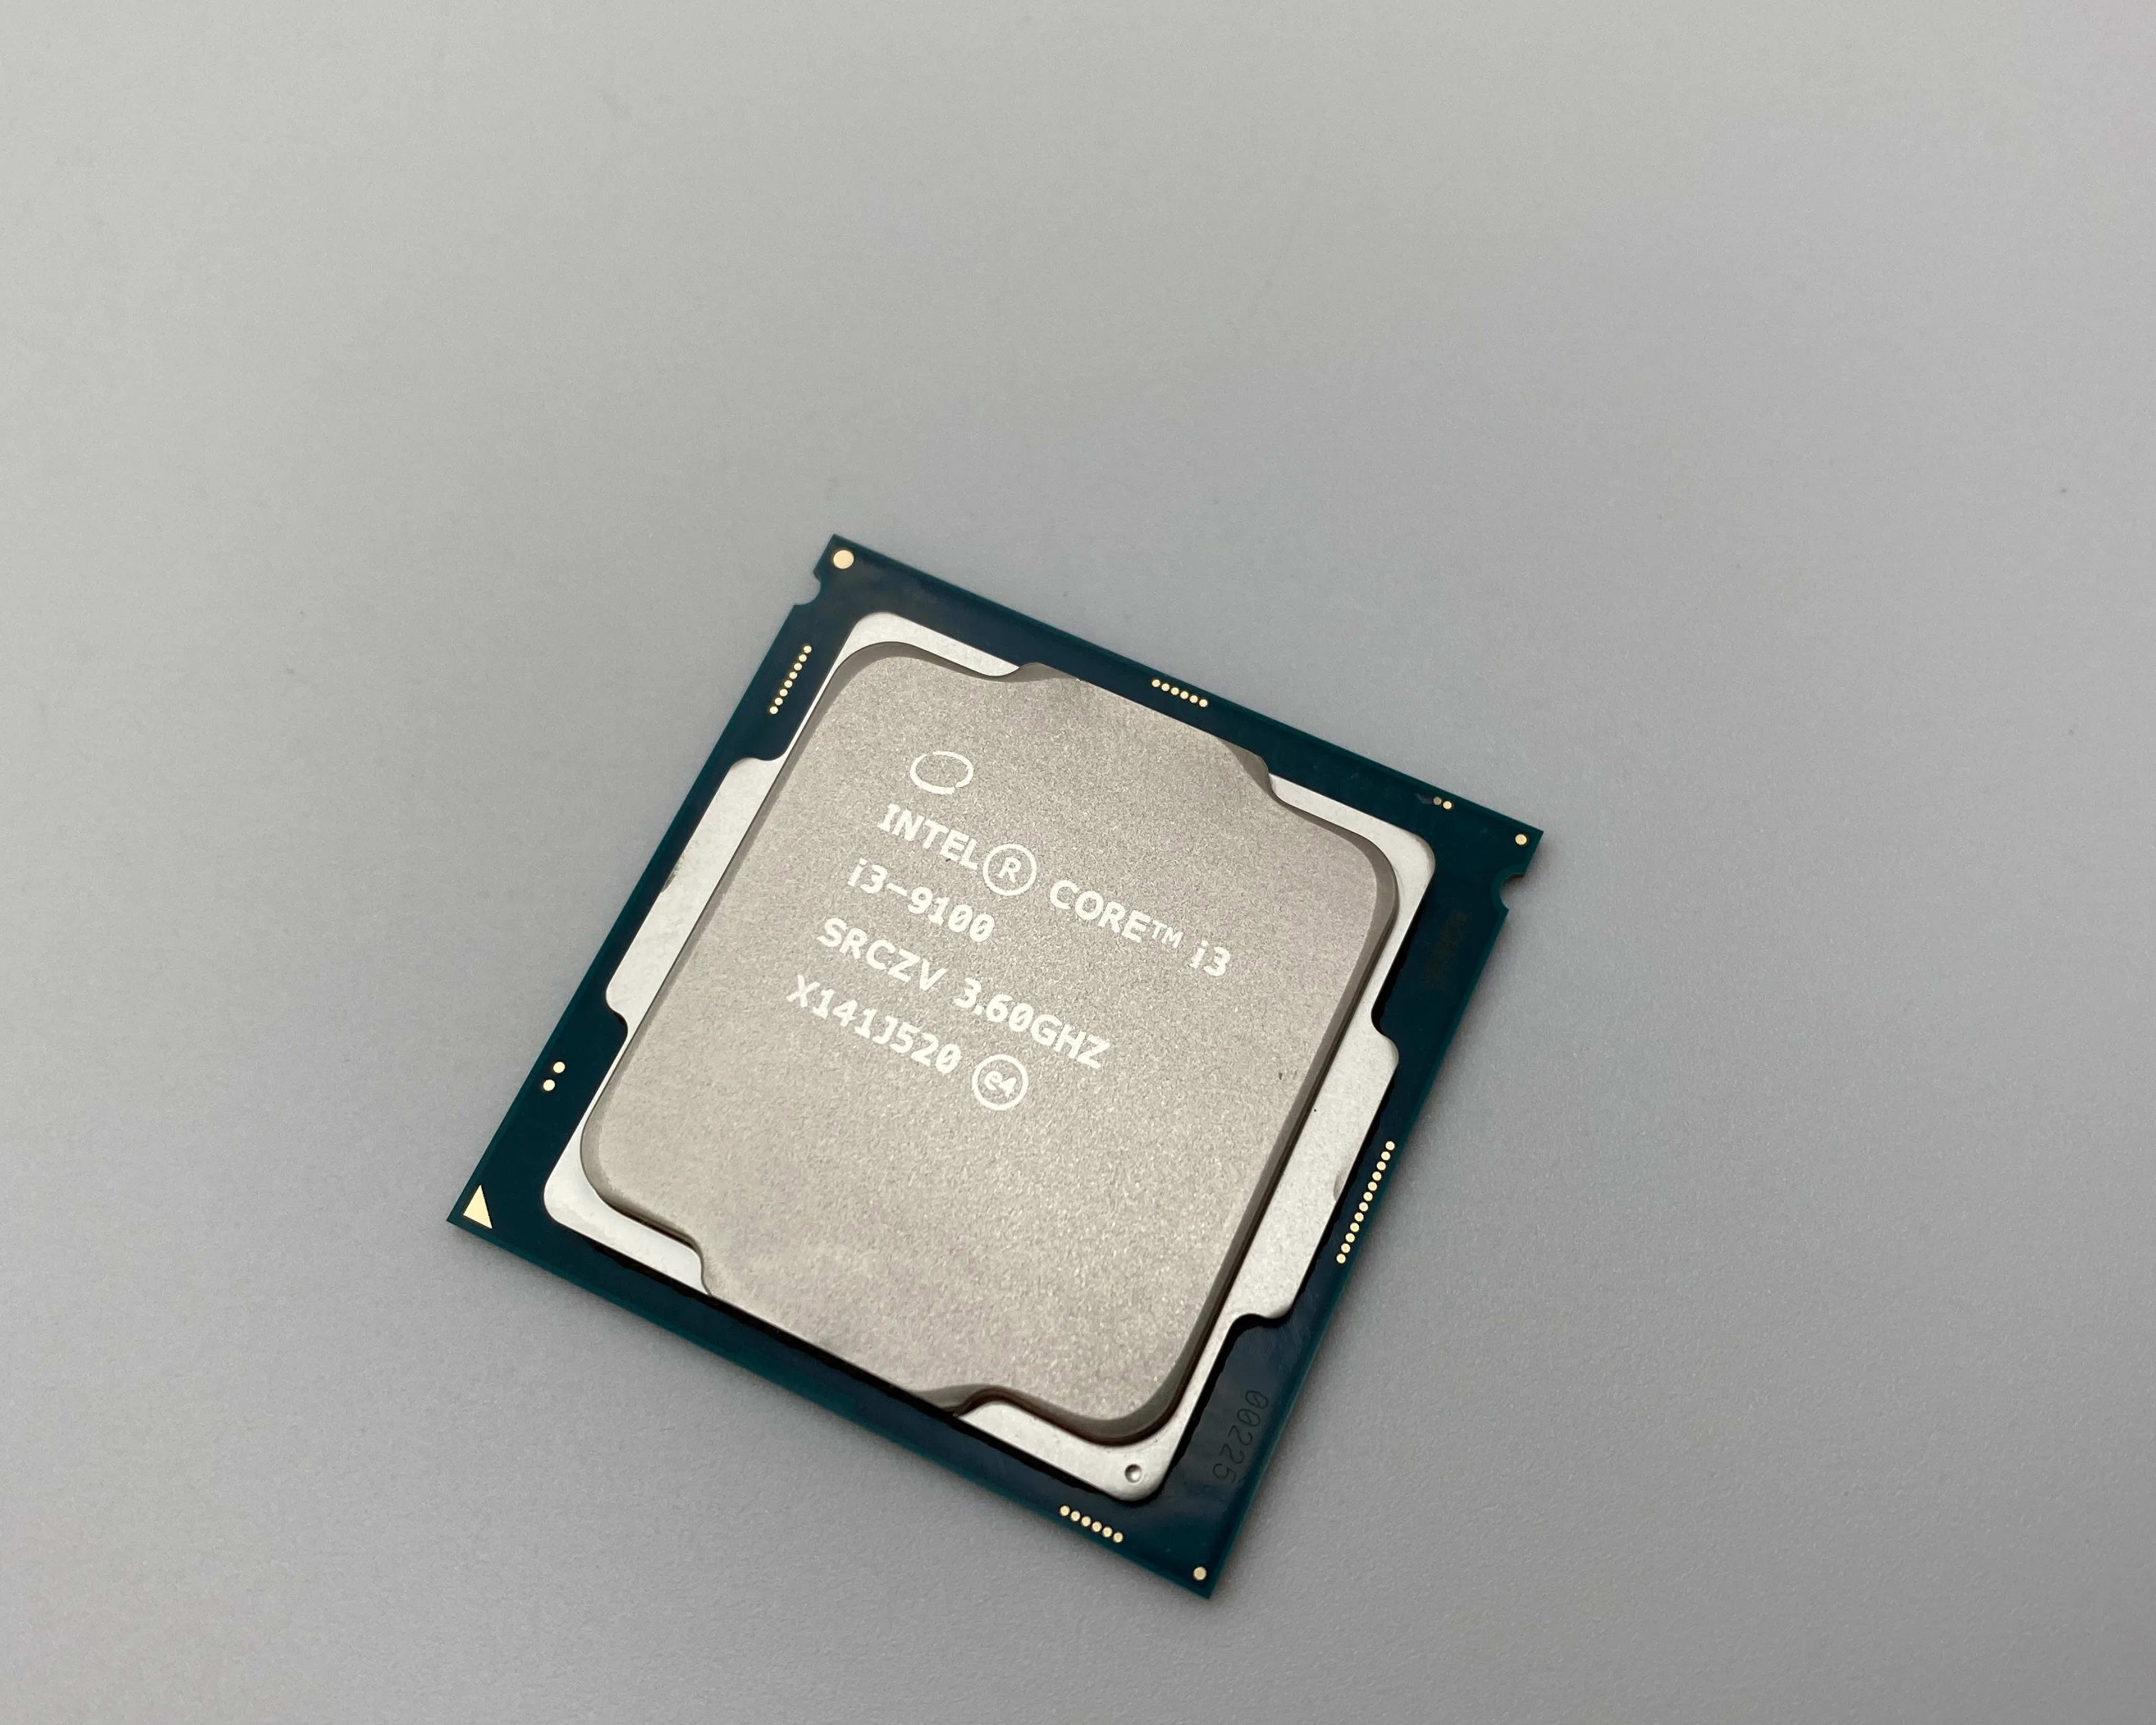 Intel Core i3-9100 3.6GHz Quad-Core CPU Processor SRCZV LGA1151 Socket